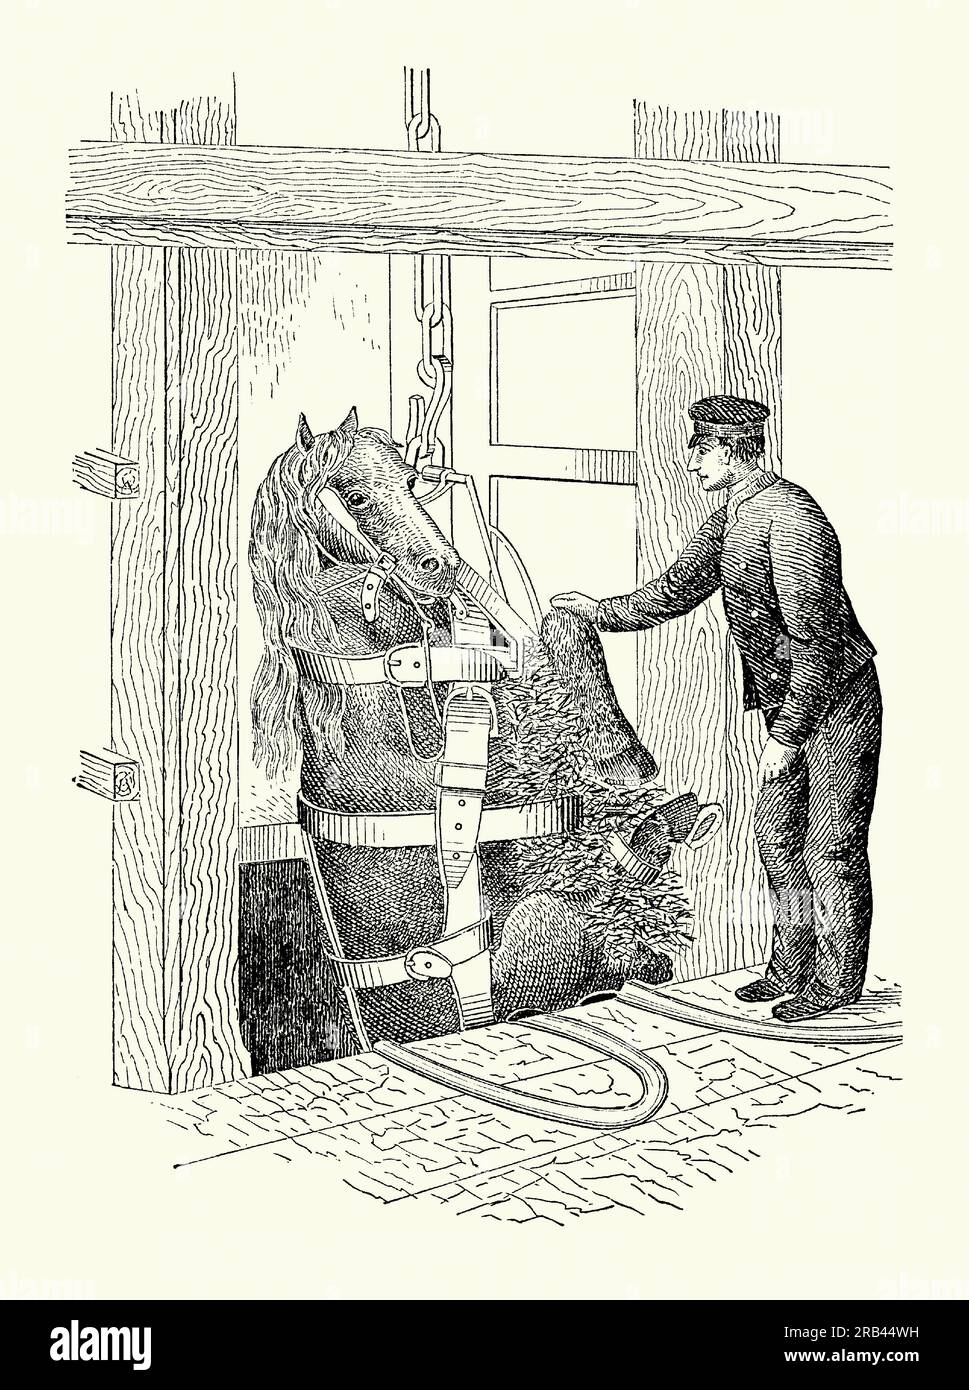 Eine alte Gravur aus den 1800er von einer Pferdeschlinge. Es stammt aus einem viktorianischen Maschinenbaubuch der 1880er Jahre. Eine Pferdeschlinge ist ein Gurt zum Anheben und Aufhängen eines Pferdes vom Boden. Hier wird das Pferd von unten aufgespult, und zu diesem Zweck wurde eine Schlinge in Minen eingesetzt. Beim Transport der Tiere können in Schiffen Schlingen verwendet werden. Pferdeschlingen werden häufig für medizinische Zwecke verwendet, um Pferden mit Beinverletzungen zu helfen. Stockfoto